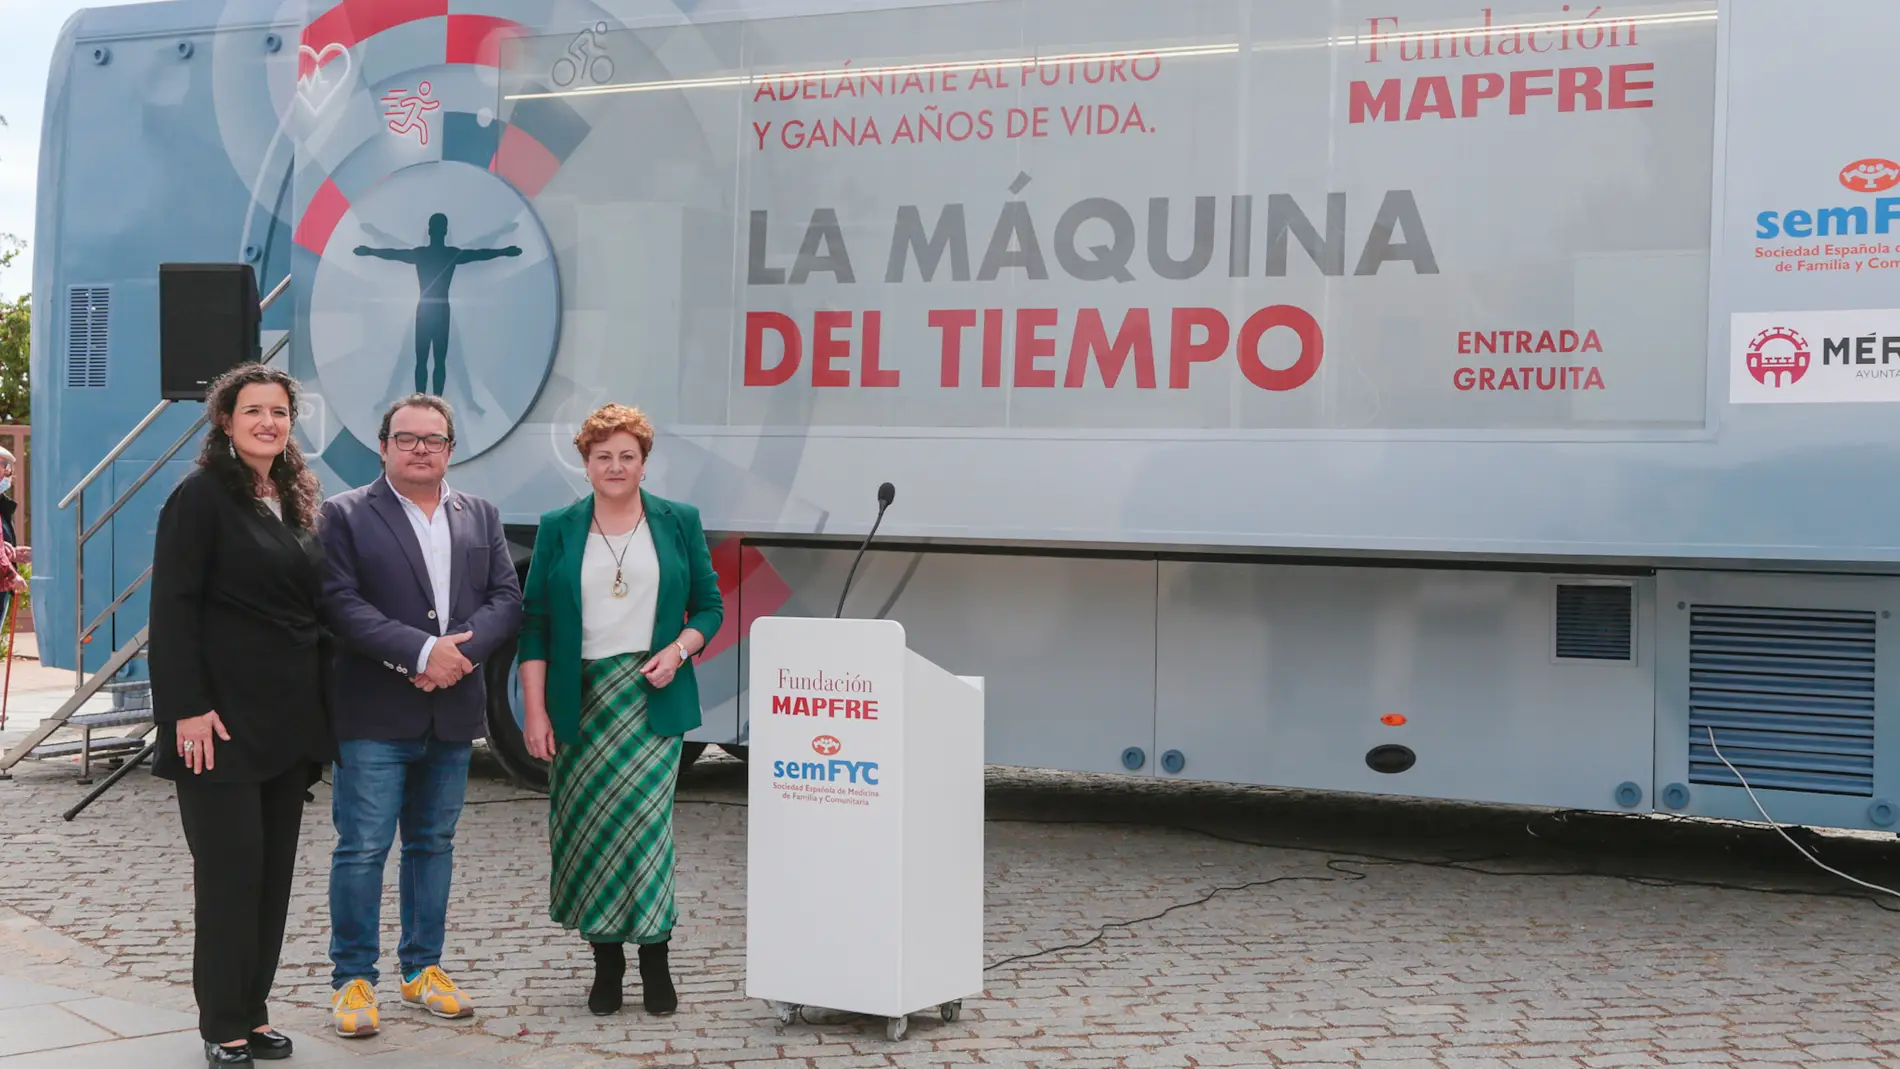 La campaña 'La máquina del tiempo' de Mapfre ayuda en Mérida a ganar años de vida con la adopción de hábitos saludables